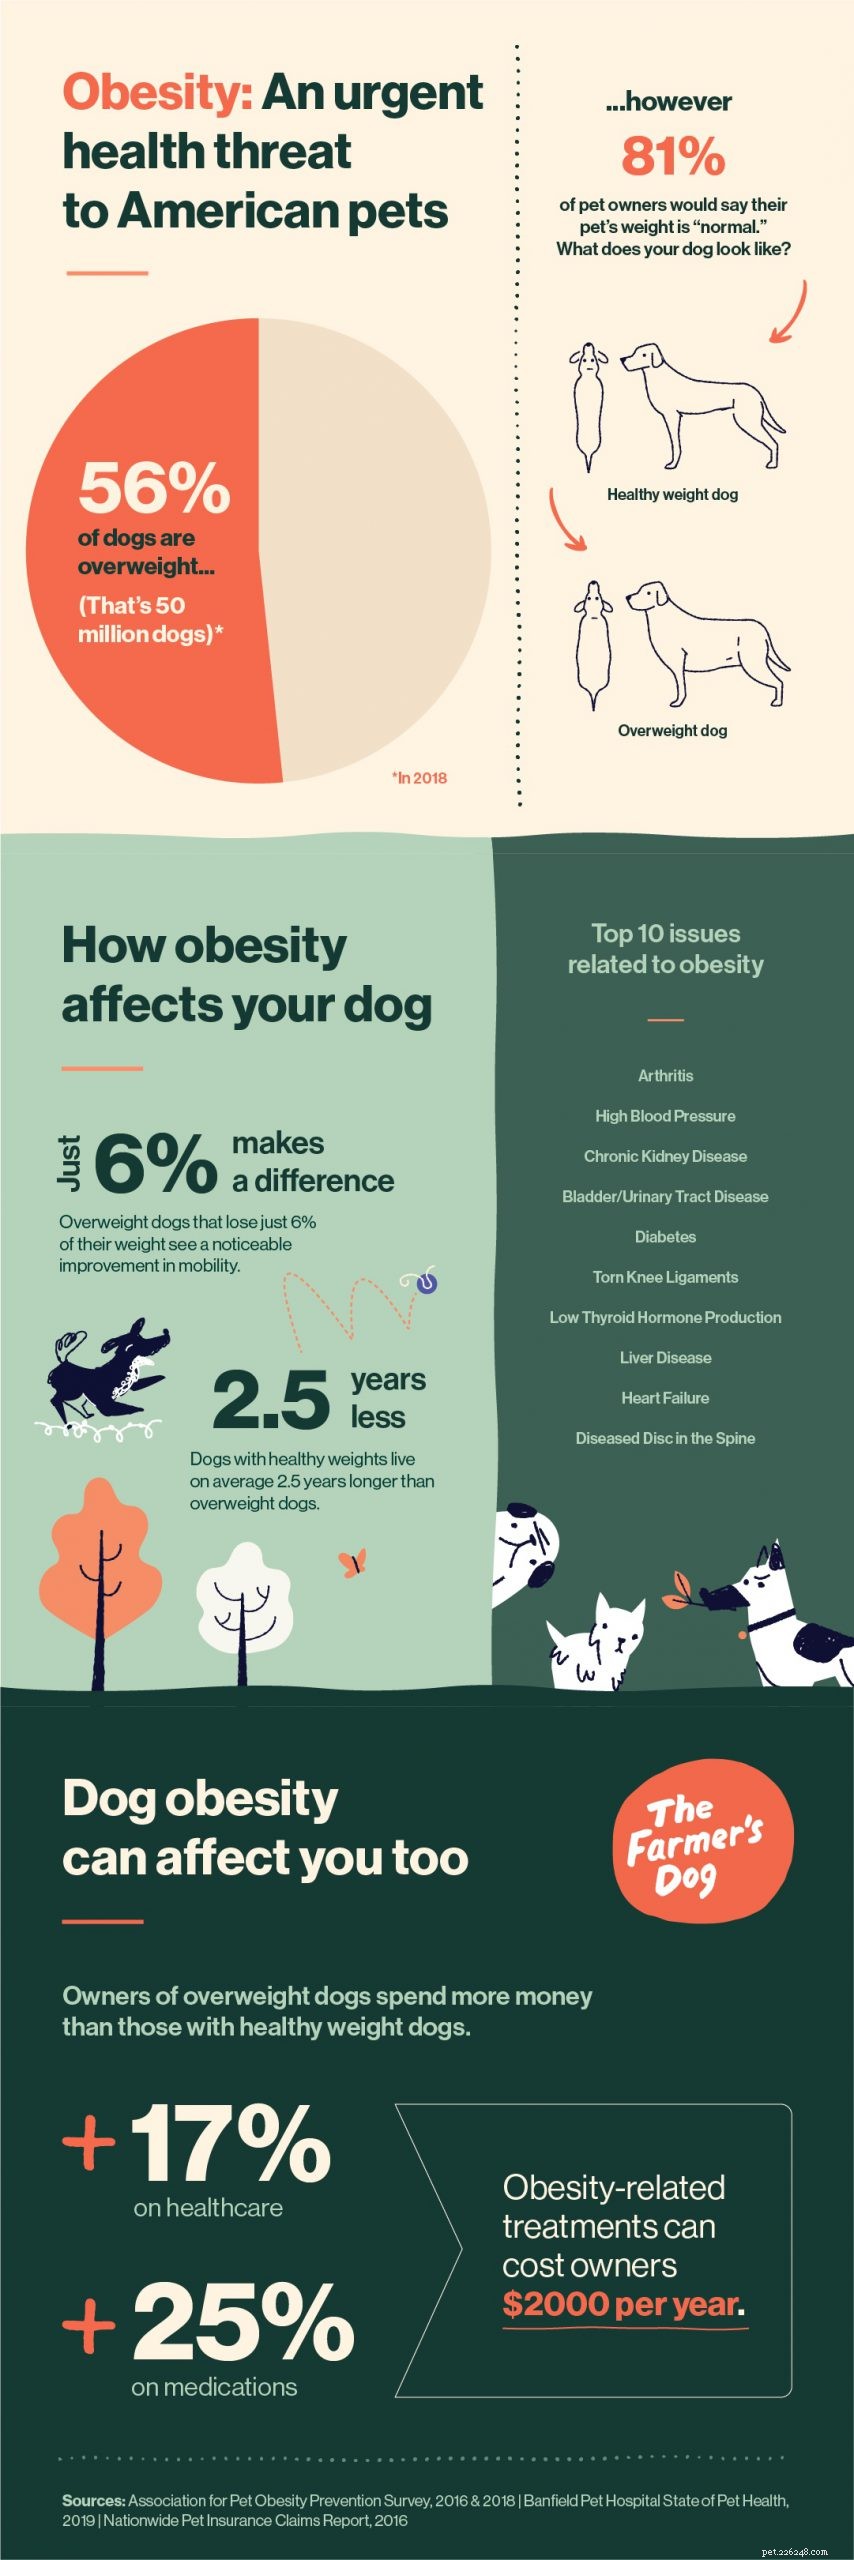 Obésité chez les chiens :une menace massive pour la santé cachée à la vue de tous